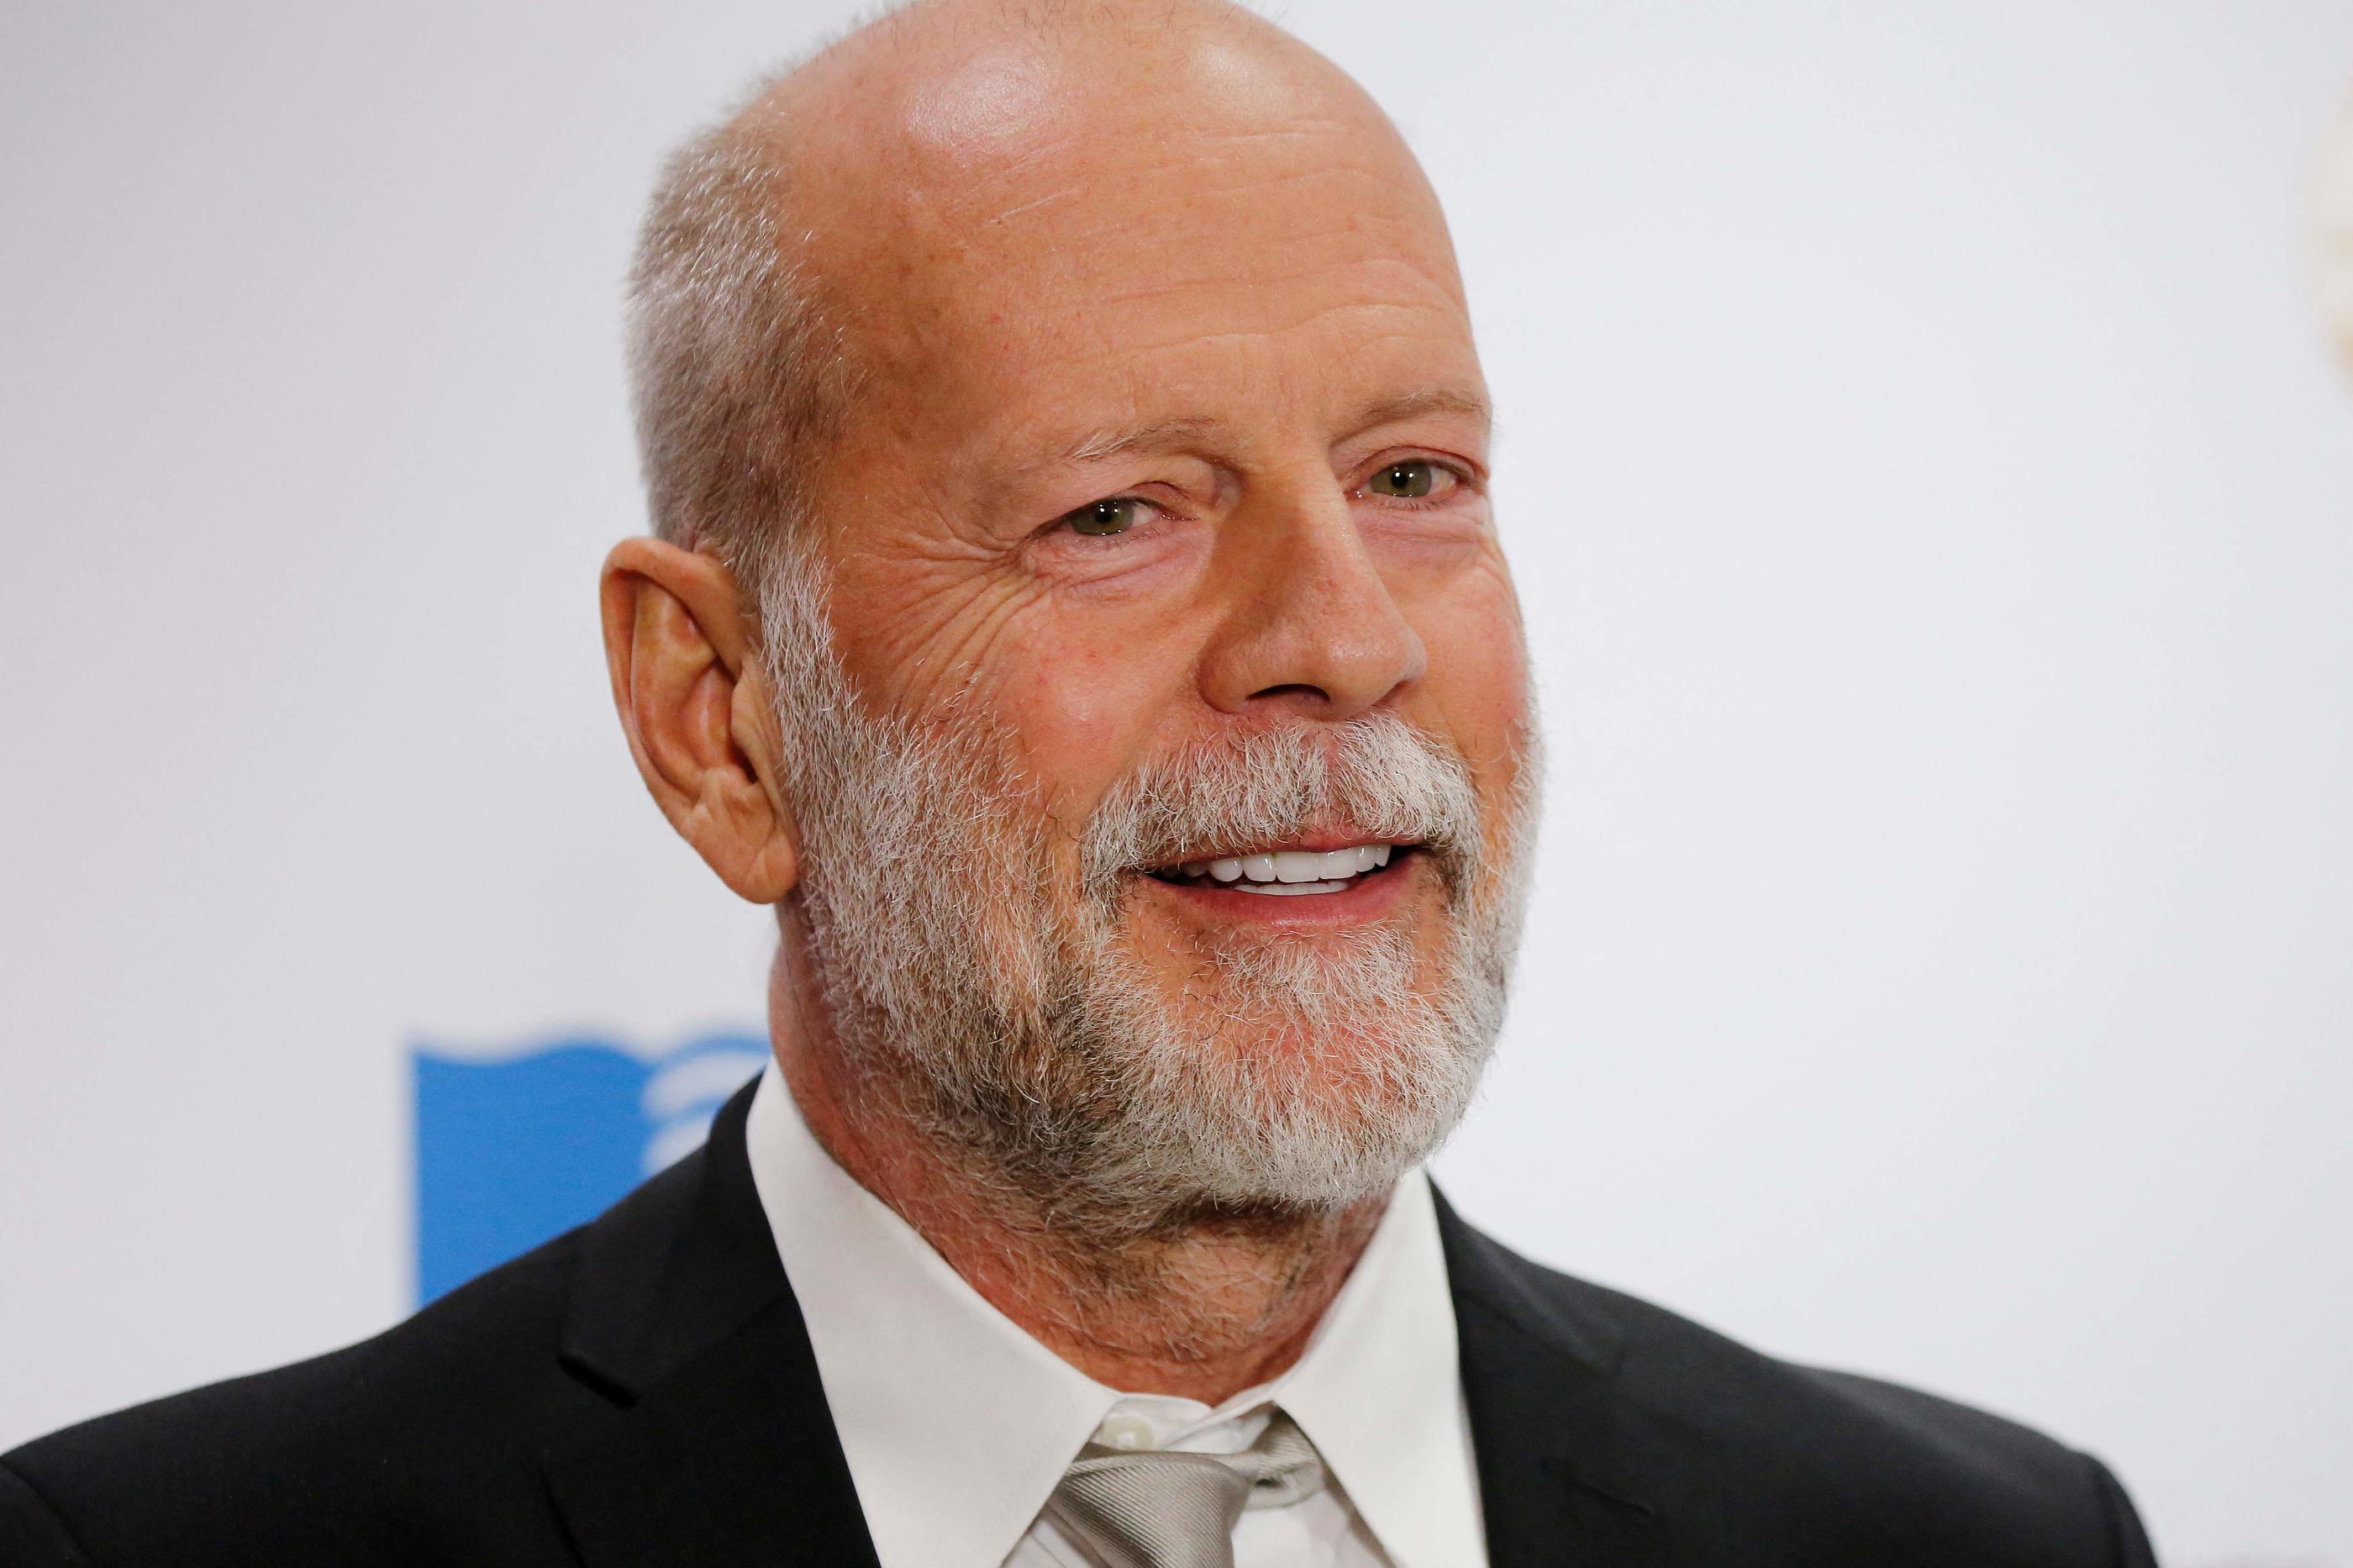 La famille de Bruce Willis a annoncé mercredi que ce dernier prenait sa retraite après avoir été diagnostiqué d'aphasie, un trouble du langage qui affecte les capacités cognitives de la personne atteinte. Illustration. (DOMINICK REUTER / AFP)